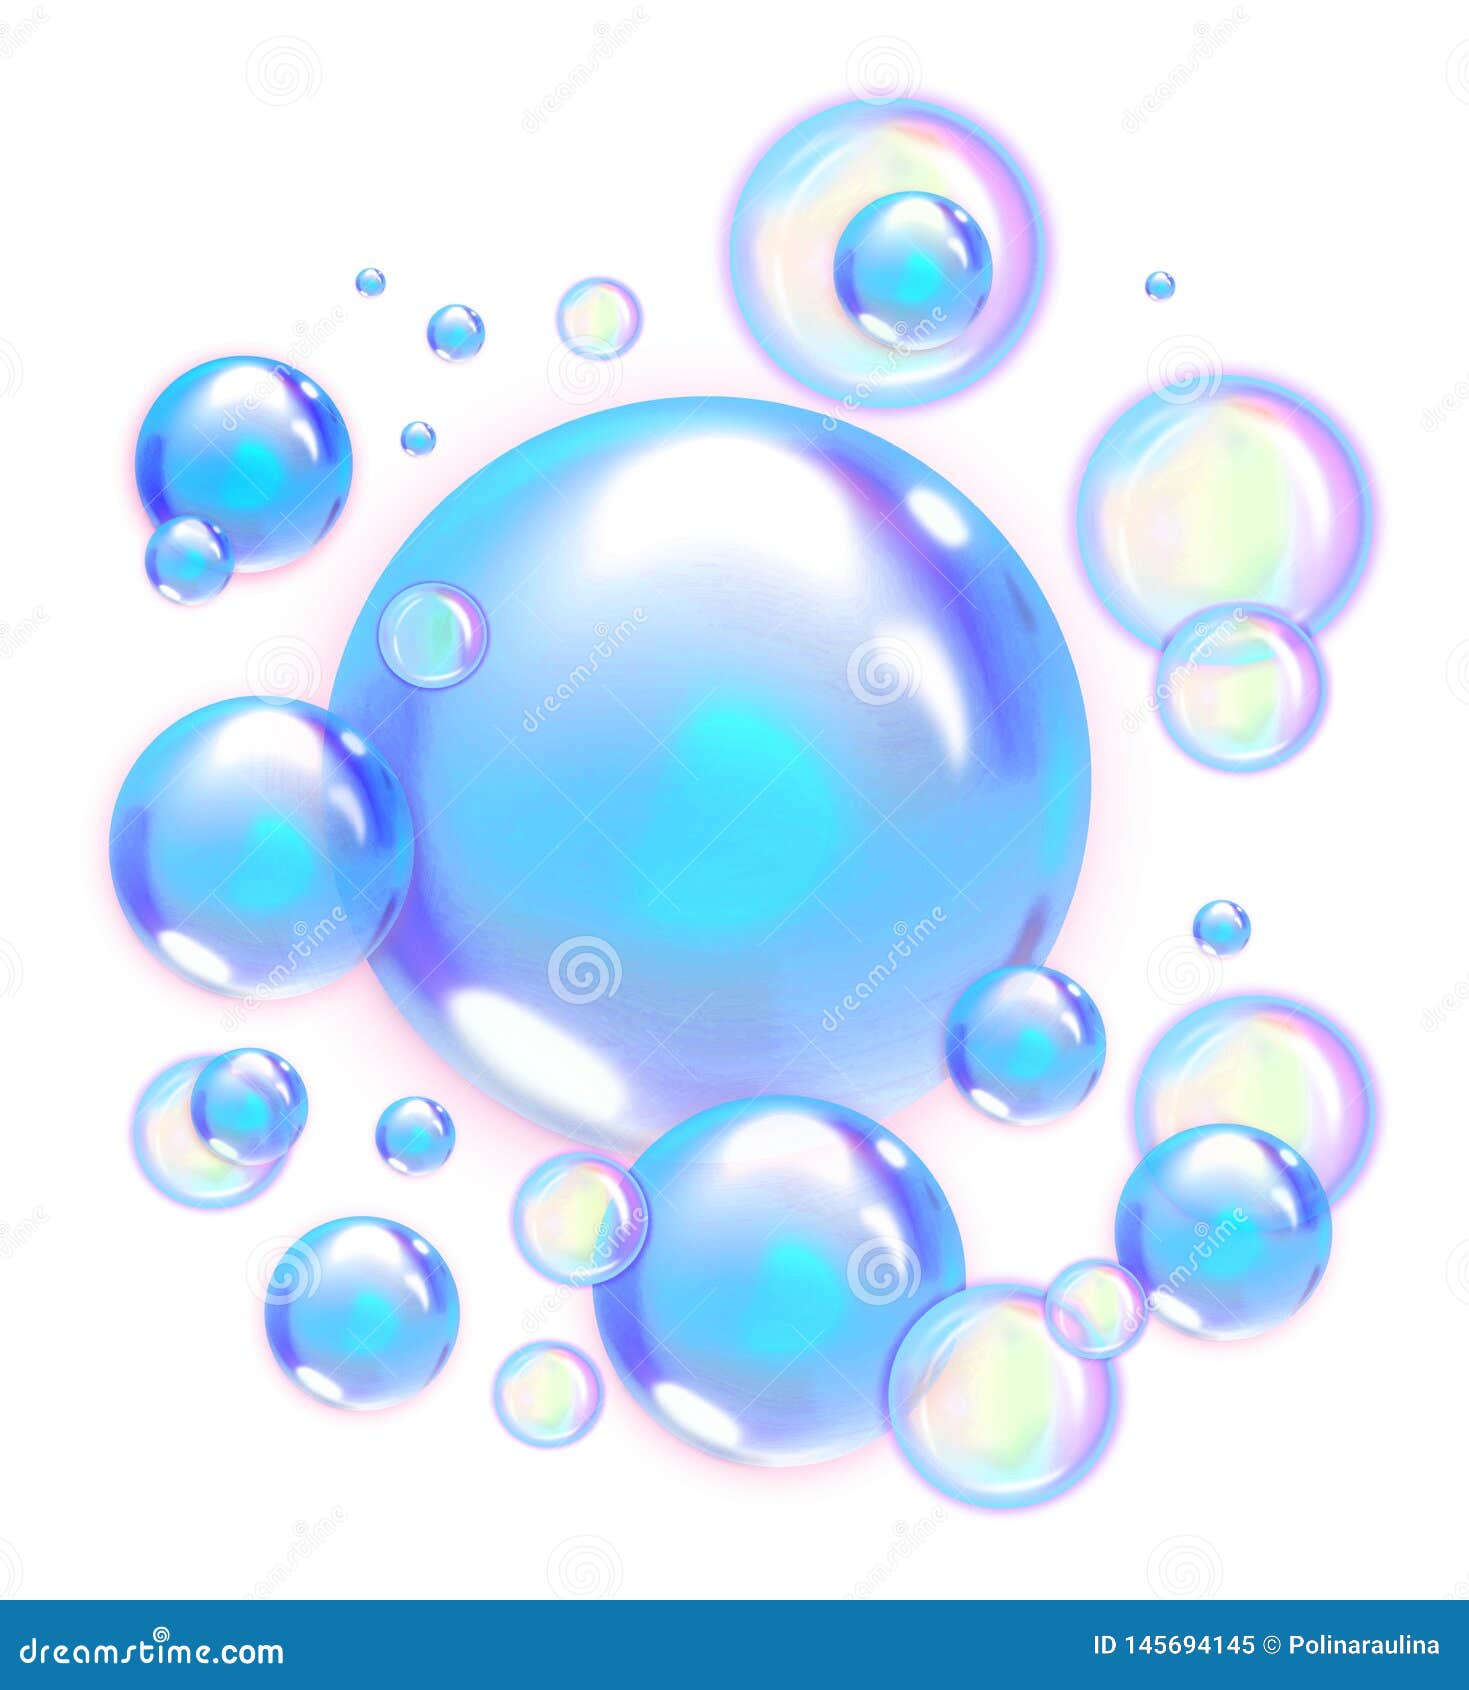 Transparent Soap Bubbles PNG Transparent, Hand Painted Transparent